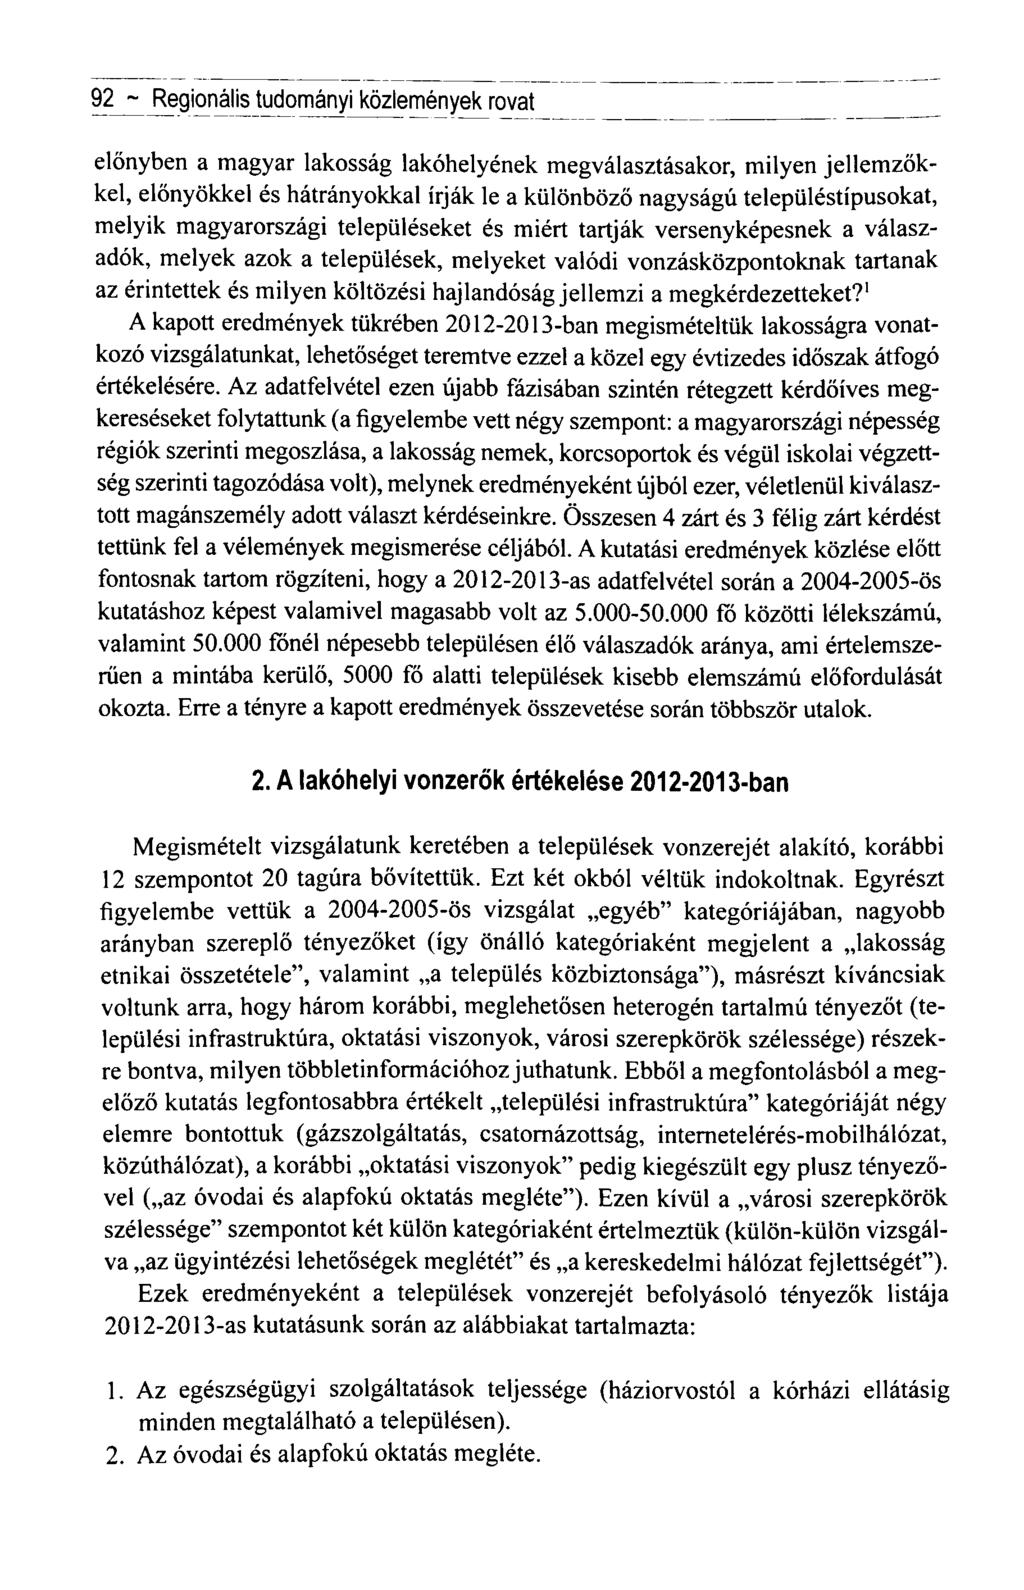 92 ~ Regionális tudományi közlemények rovat előnyben a magyar lakosság lakóhelyének megválasztásakor, milyen jellemzőkkel, előnyökkel és hátrányokkal írják le a különböző nagyságú településtípusokat,